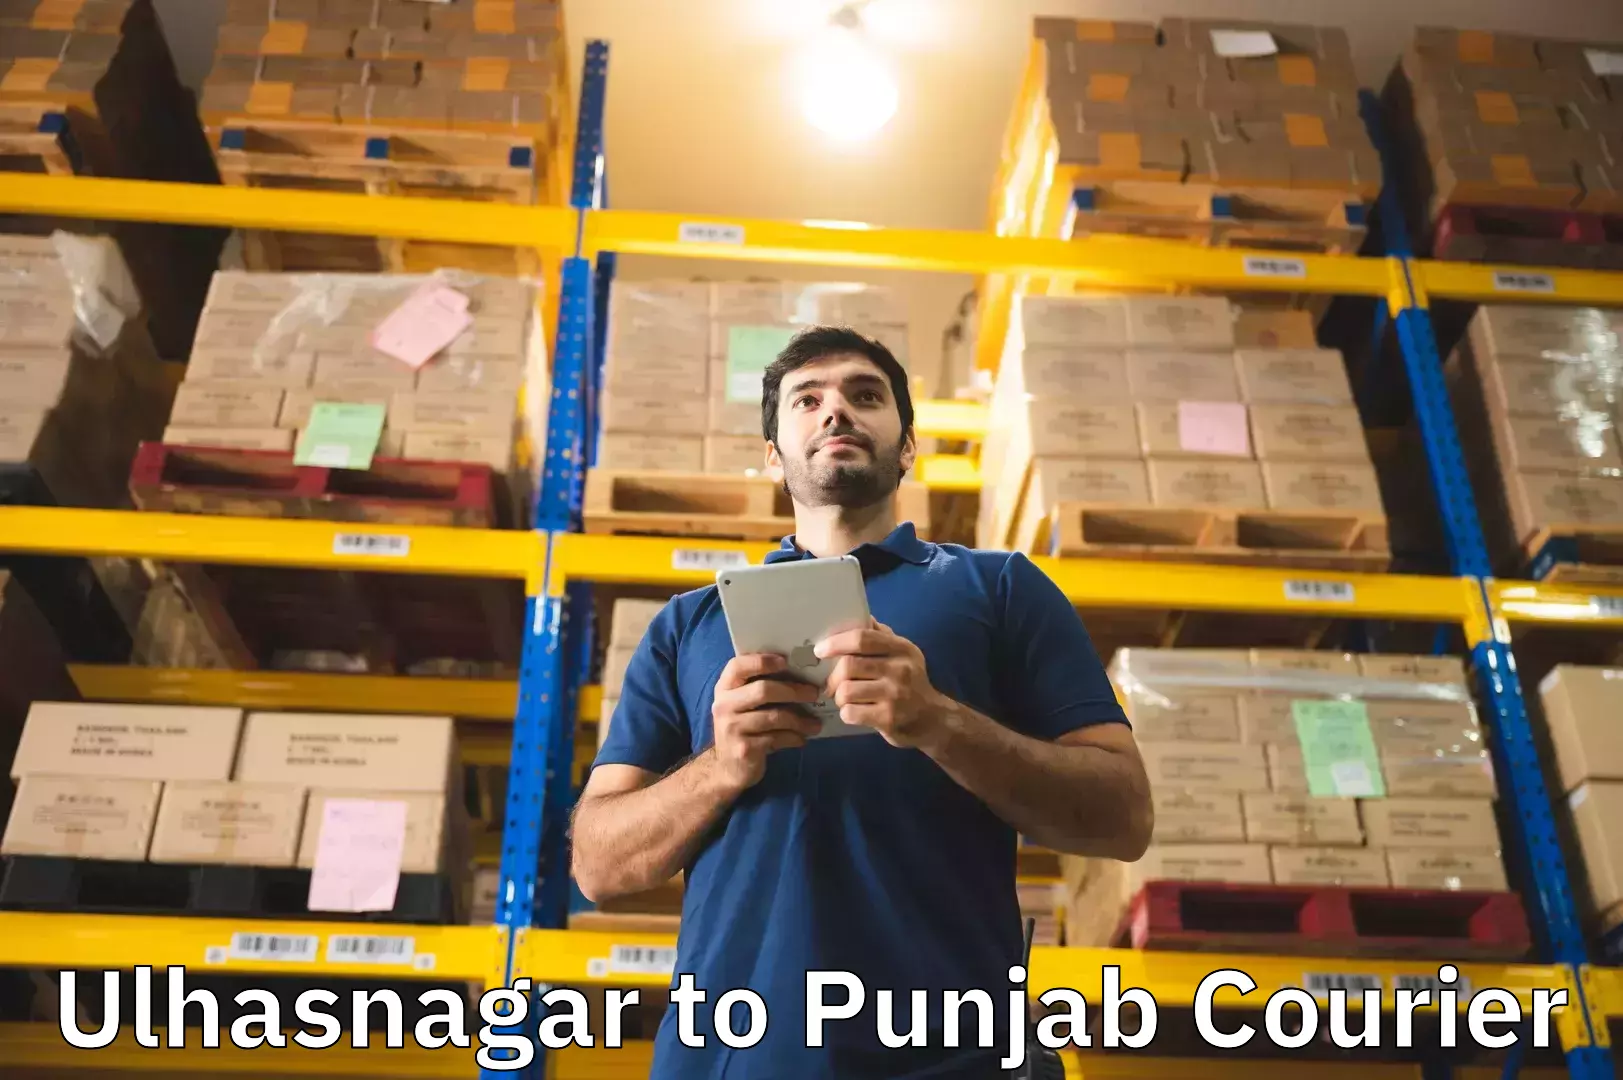 Baggage shipping quotes Ulhasnagar to Amritsar